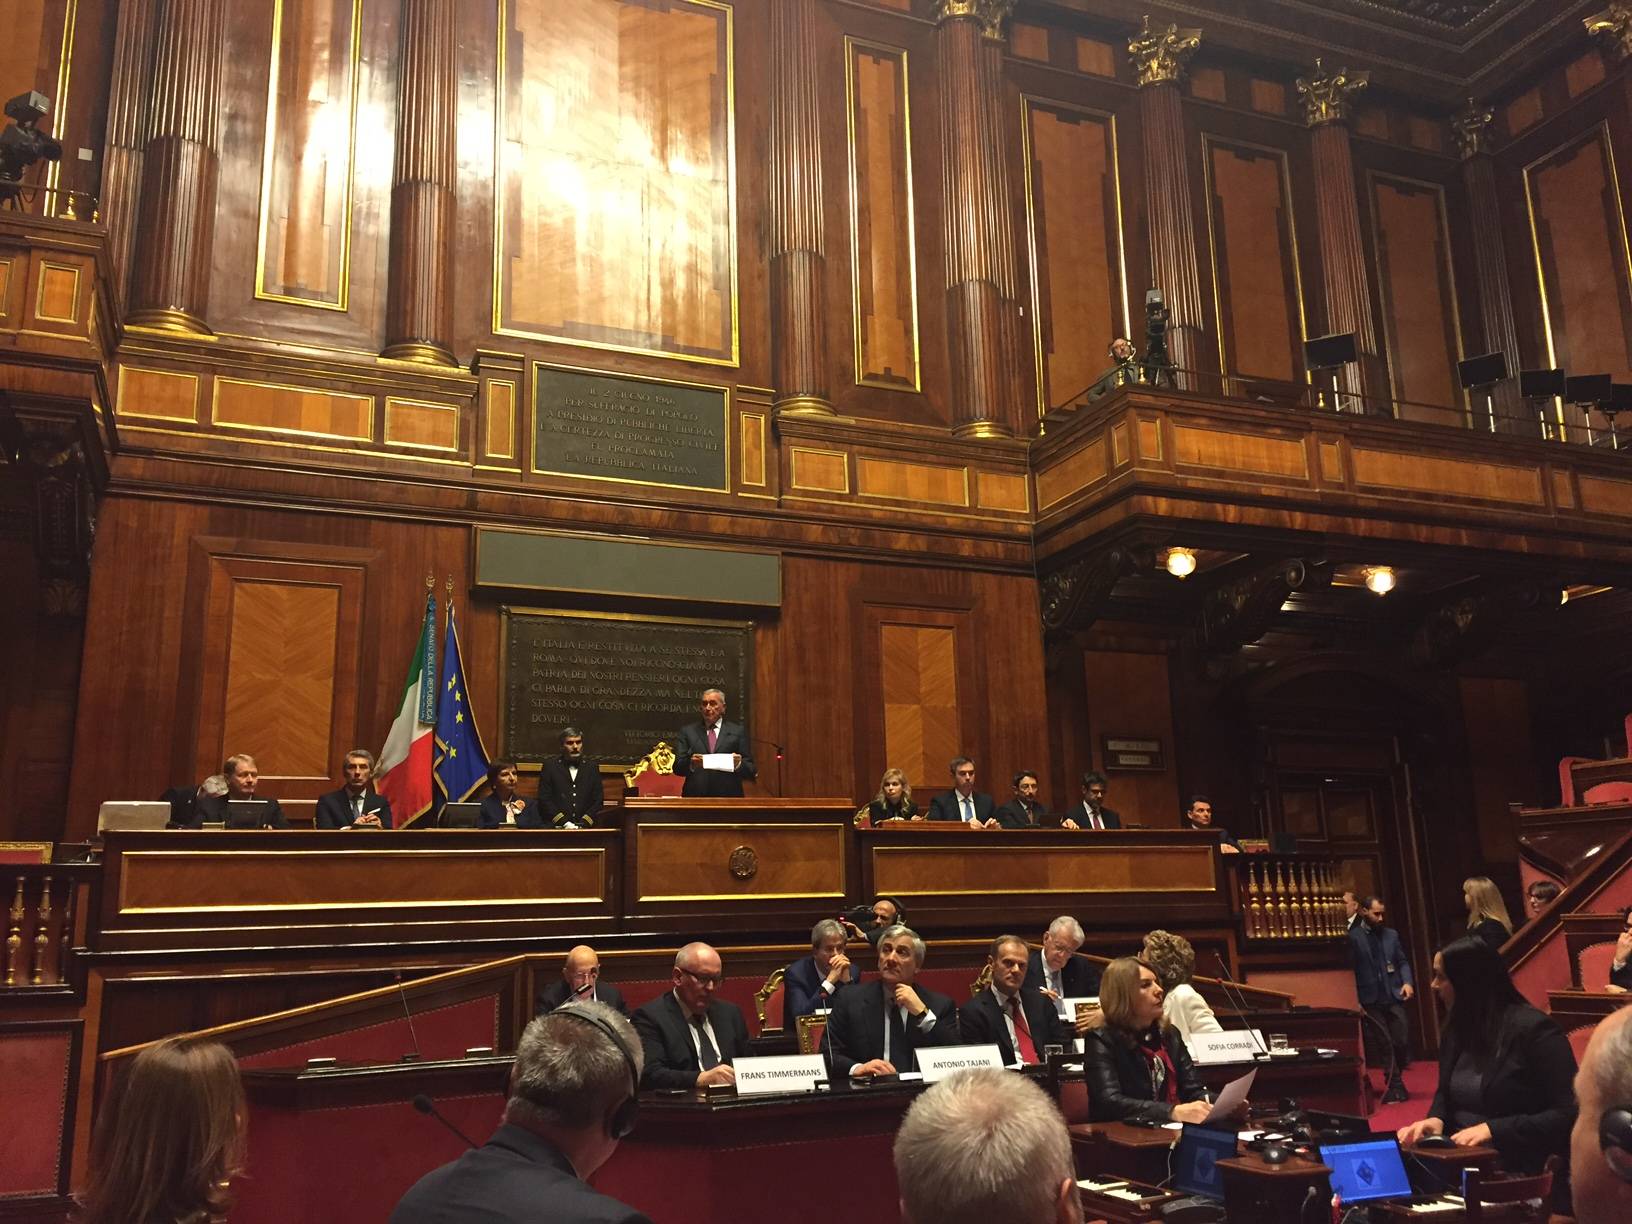 De plenaire zaal van de Italiaanse senaat